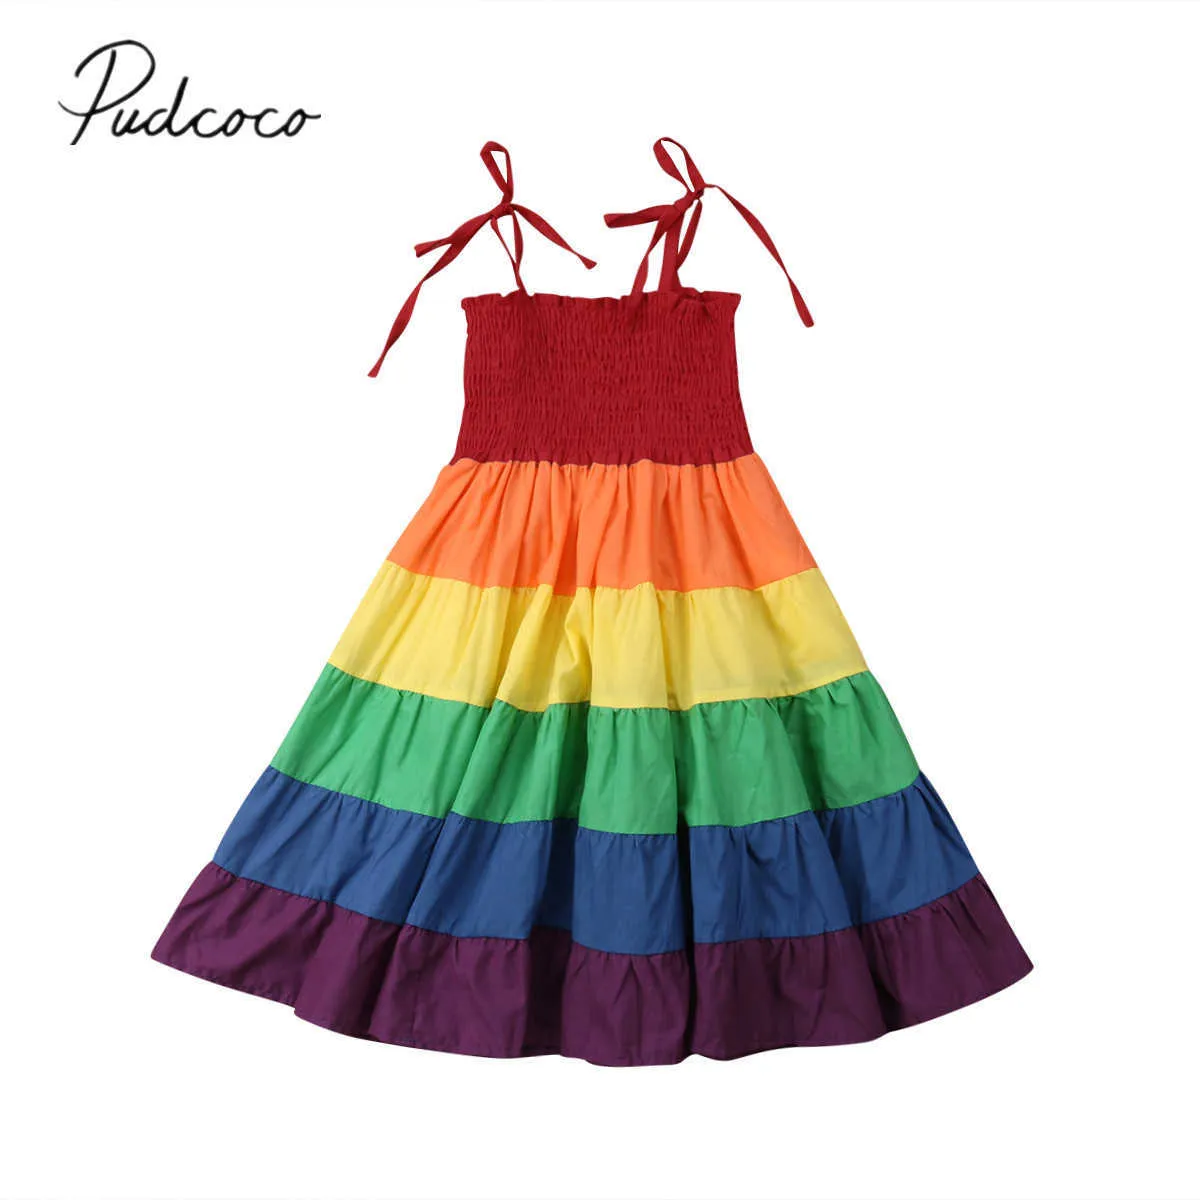 2019ブランドの新しい幼児子供赤ちゃん女の子のドレスカラフルな虹の縞模様のプリントフリルAラインドレスサンドレス夏かわいい衣装2-7Y Q0716